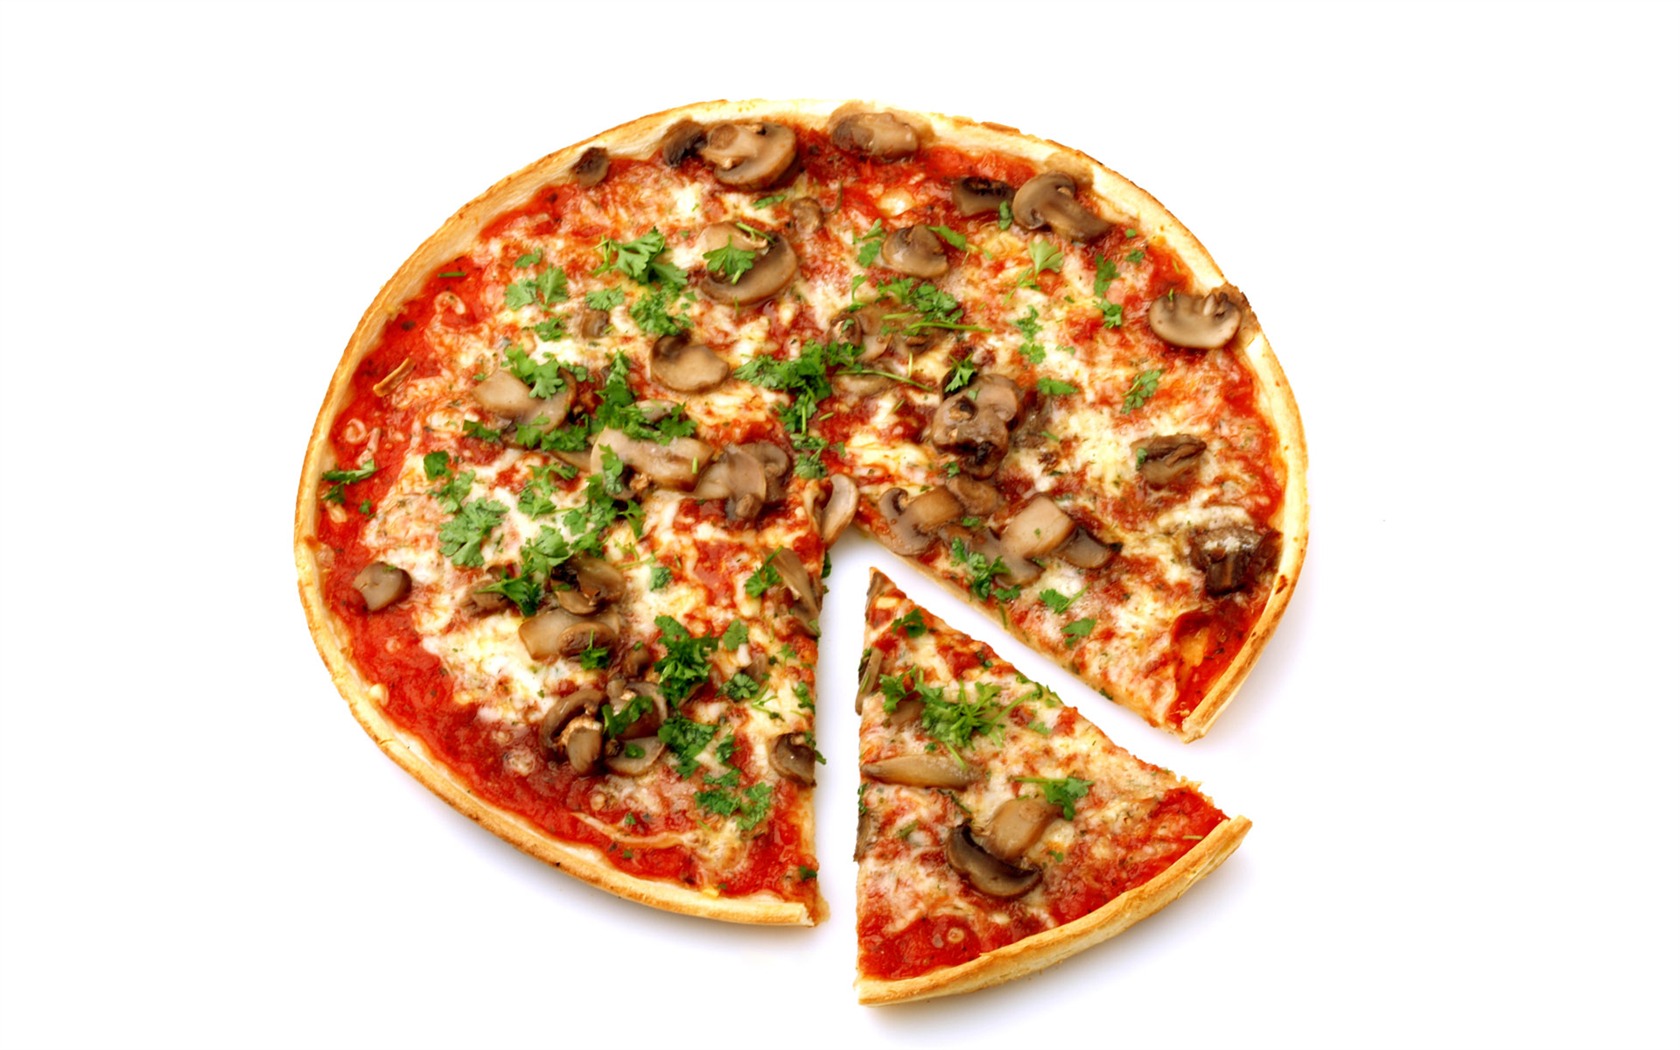 Fondos de pizzerías de Alimentos (4) #2 - 1680x1050